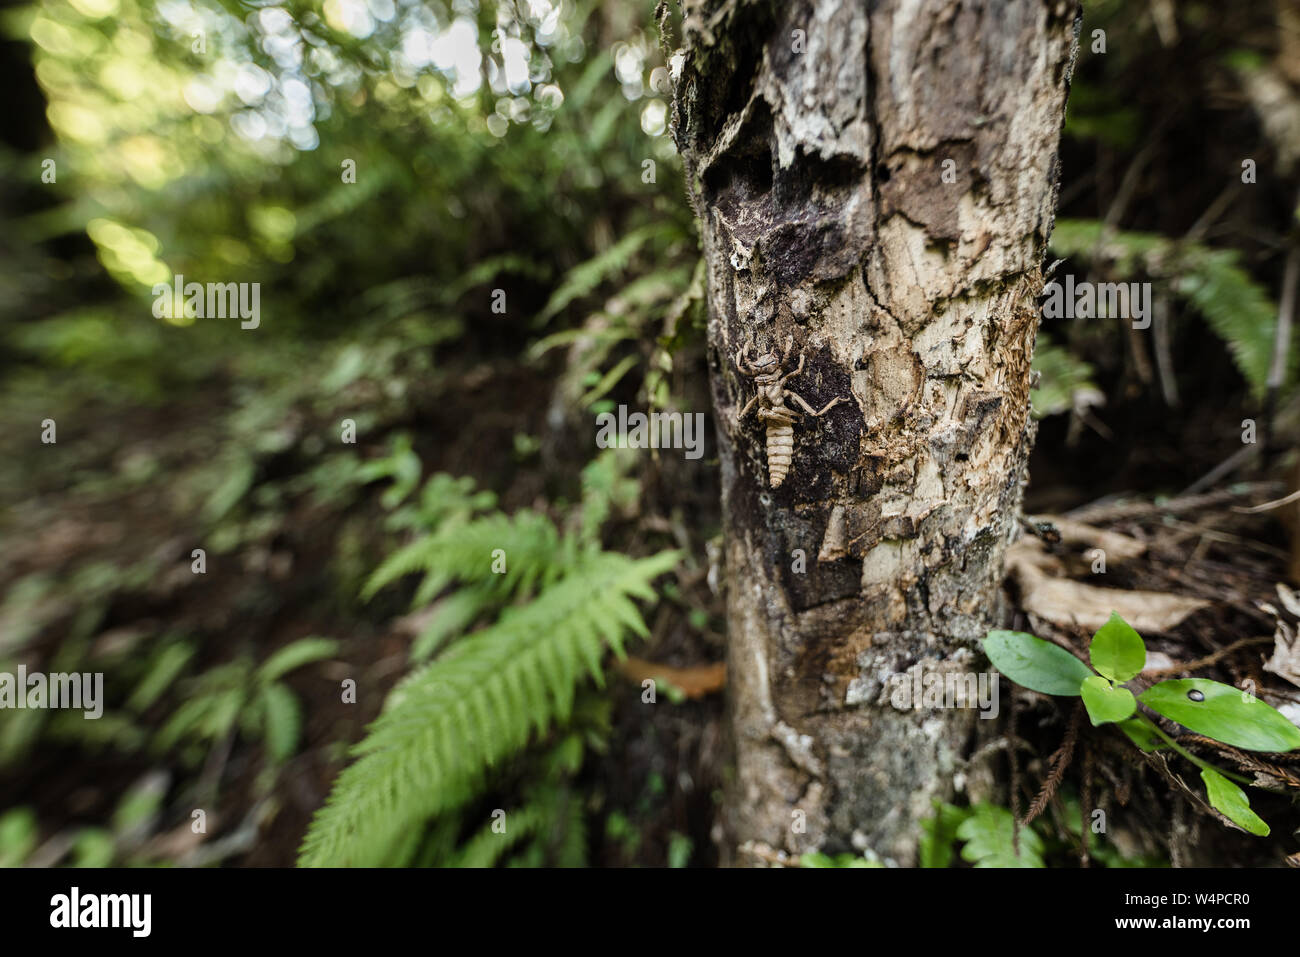 Weta insecte sur un tronc d'arbre dans une forêt luxuriante en Nouvelle Zélande Banque D'Images